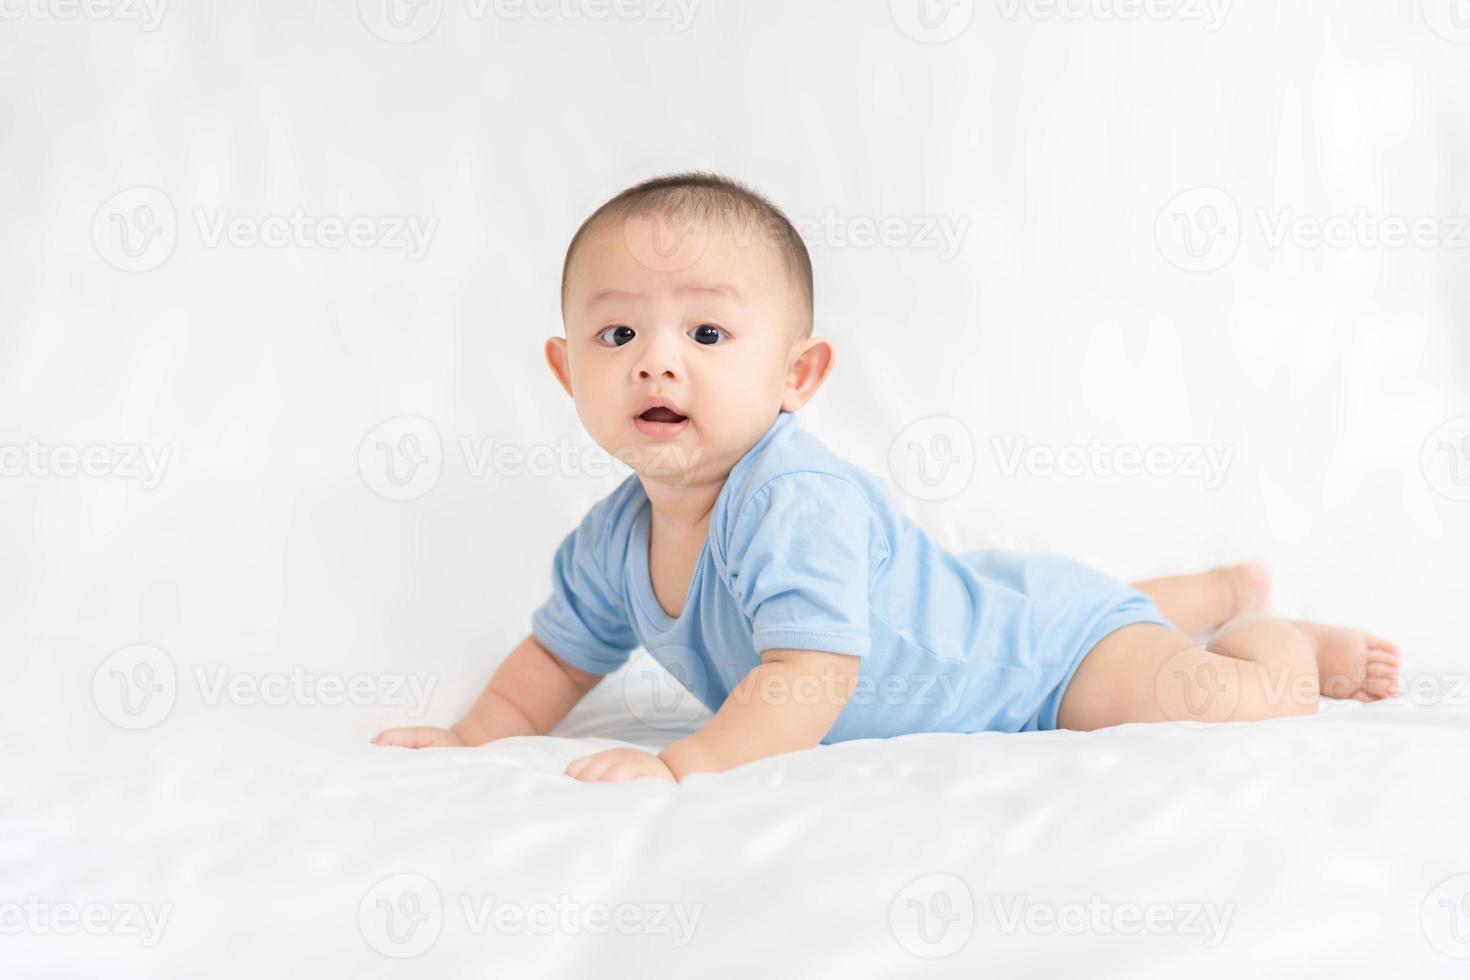 famille heureuse, bébé nouveau-né asiatique mignon porter une chemise bleue couché, rampant, jouer sur un lit blanc avec un sourire souriant visage heureux. petit enfant innocent adorable enfant au premier jour de la vie. notion de fête des mères. photo